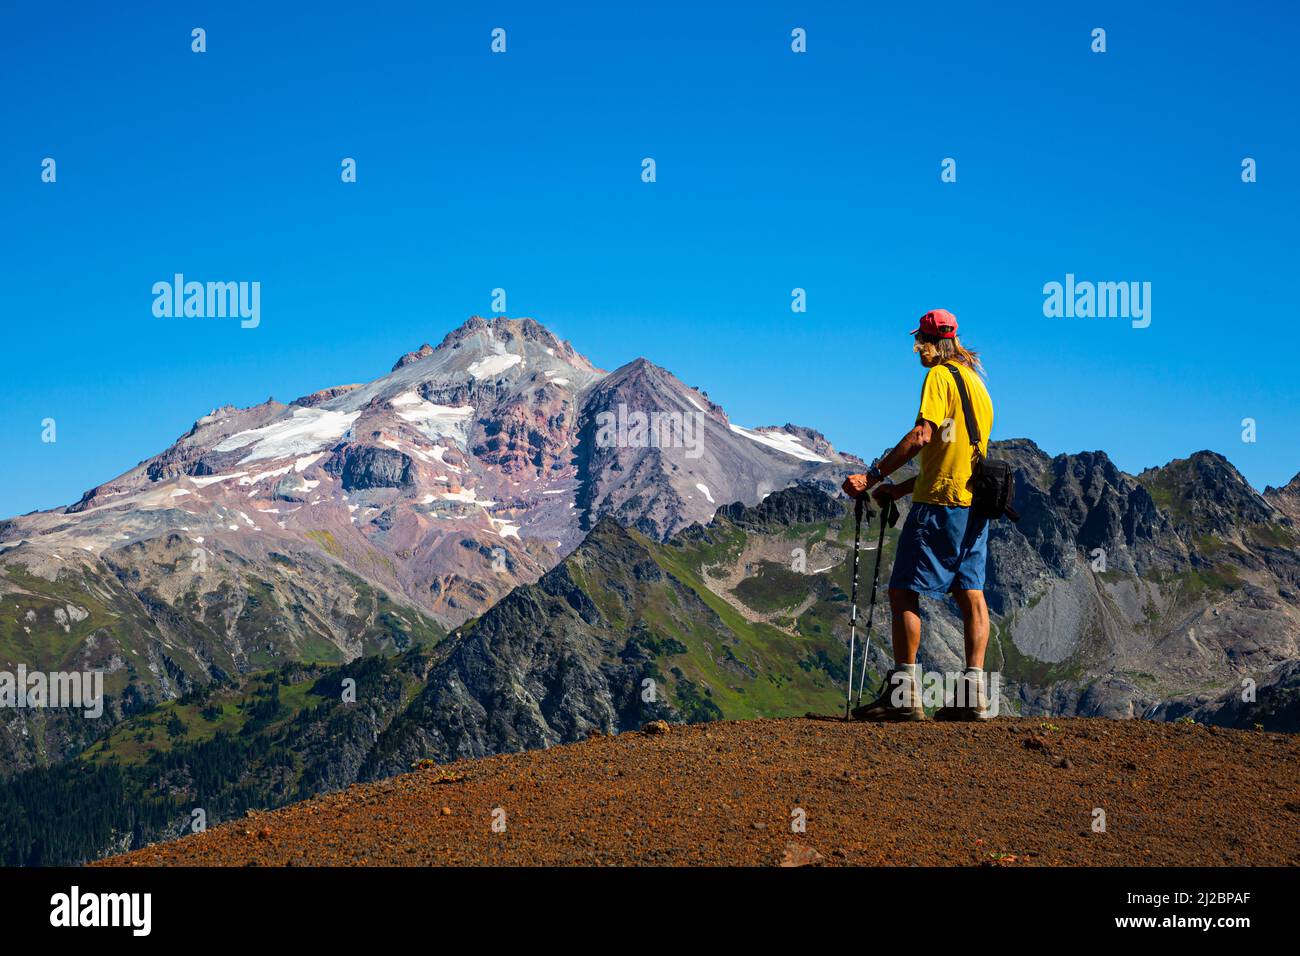 WA21238-00...WASHINGTON - Caminando viendo Glacier Peak desde la cresta del cono de Chuck Cinder en el área de la naturaleza de Glacier Peak. Foto de stock